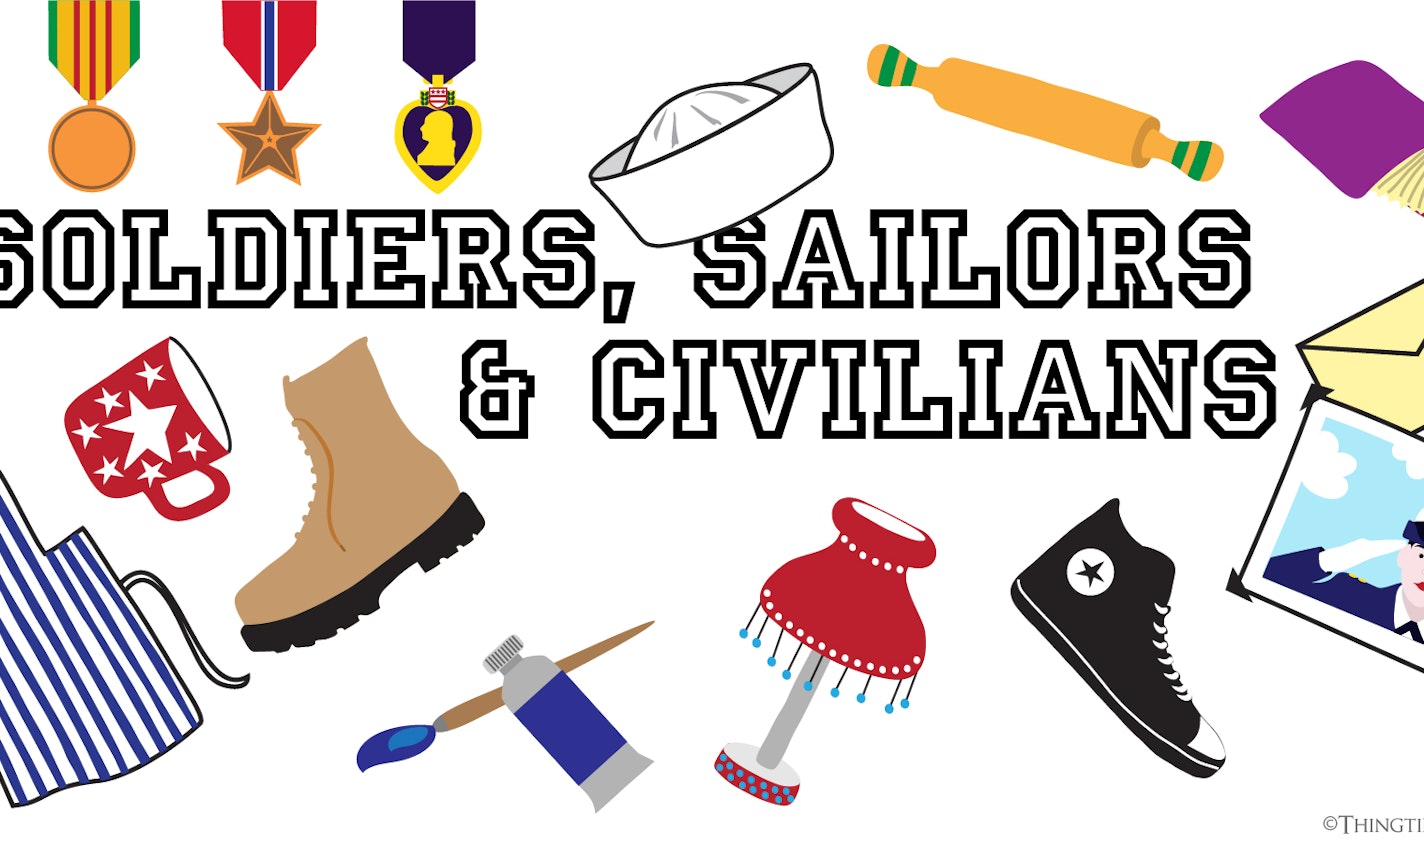 Show & Tale: Soldiers, Sailors & Civilians